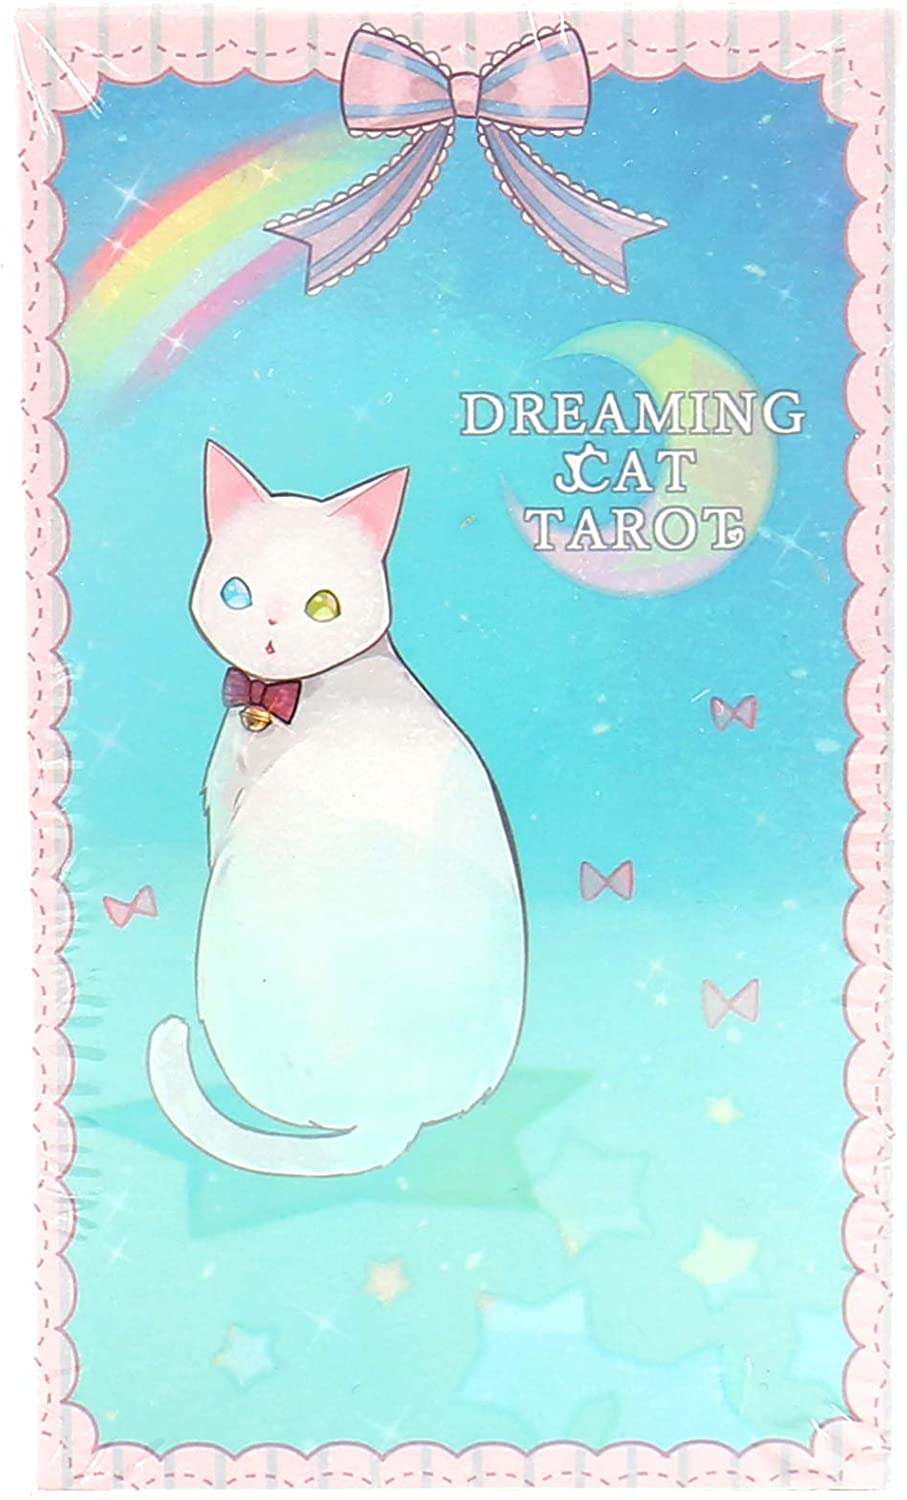 これぞ ユメかわいい タロット Pastel Unicorn Tarot パステル ユニコーン タロット Dreaming Cat Tarot ドリーミング キャット タロット の紹介 中川龍のブログ 占いのやり方 占い師の集客方法 心理学などを語っています